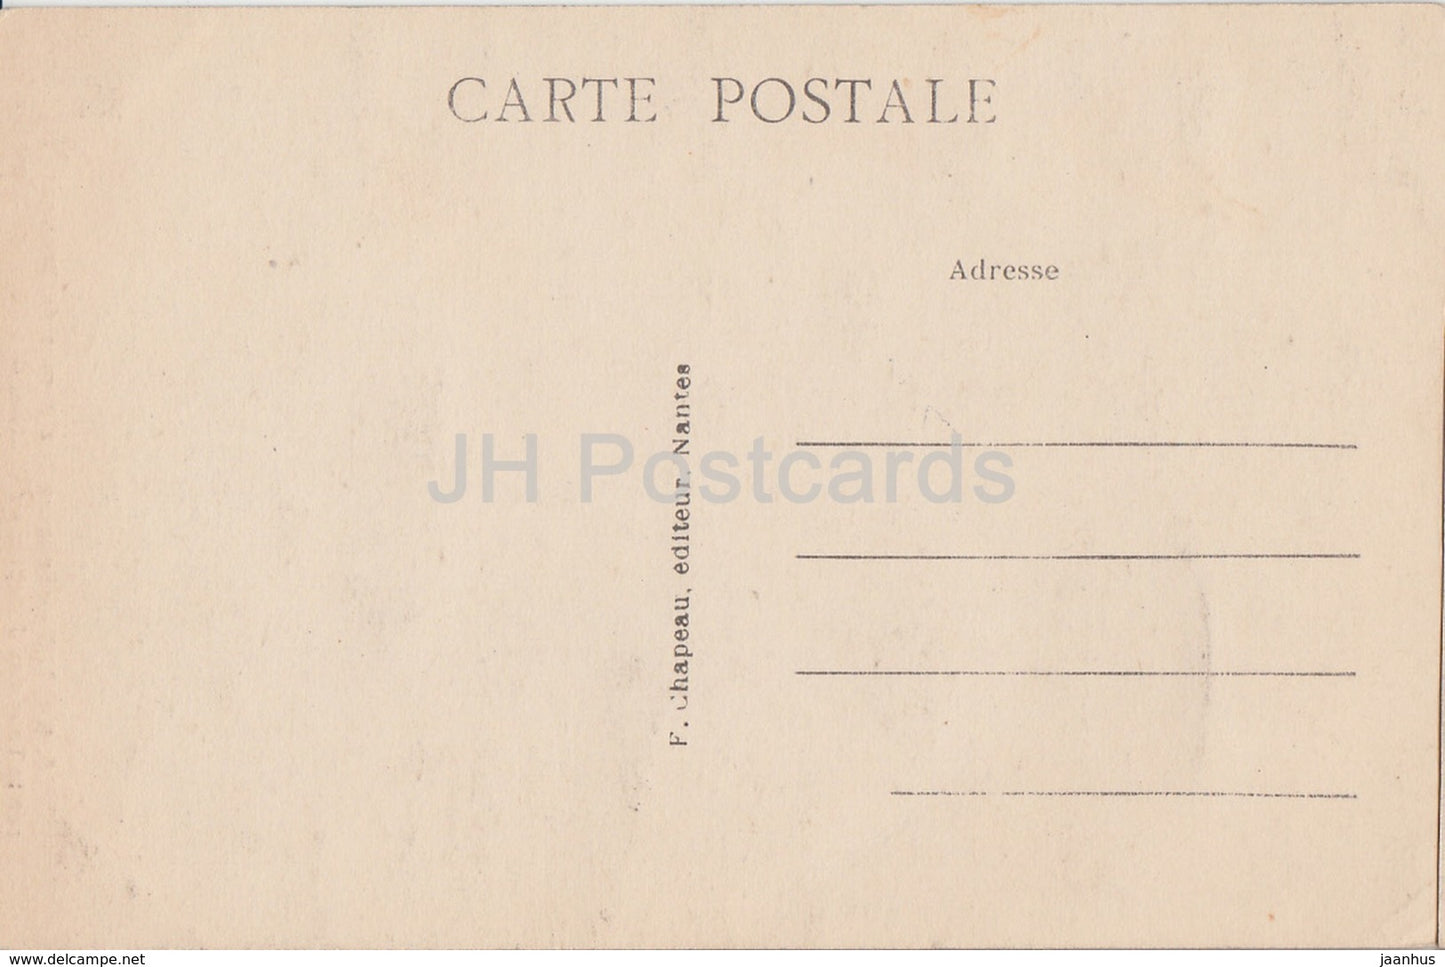 Nantes - Ecusson aux Armes de Bretagne sur la Tour des Jacobins - château - 5 - carte postale ancienne - France - inutilisée